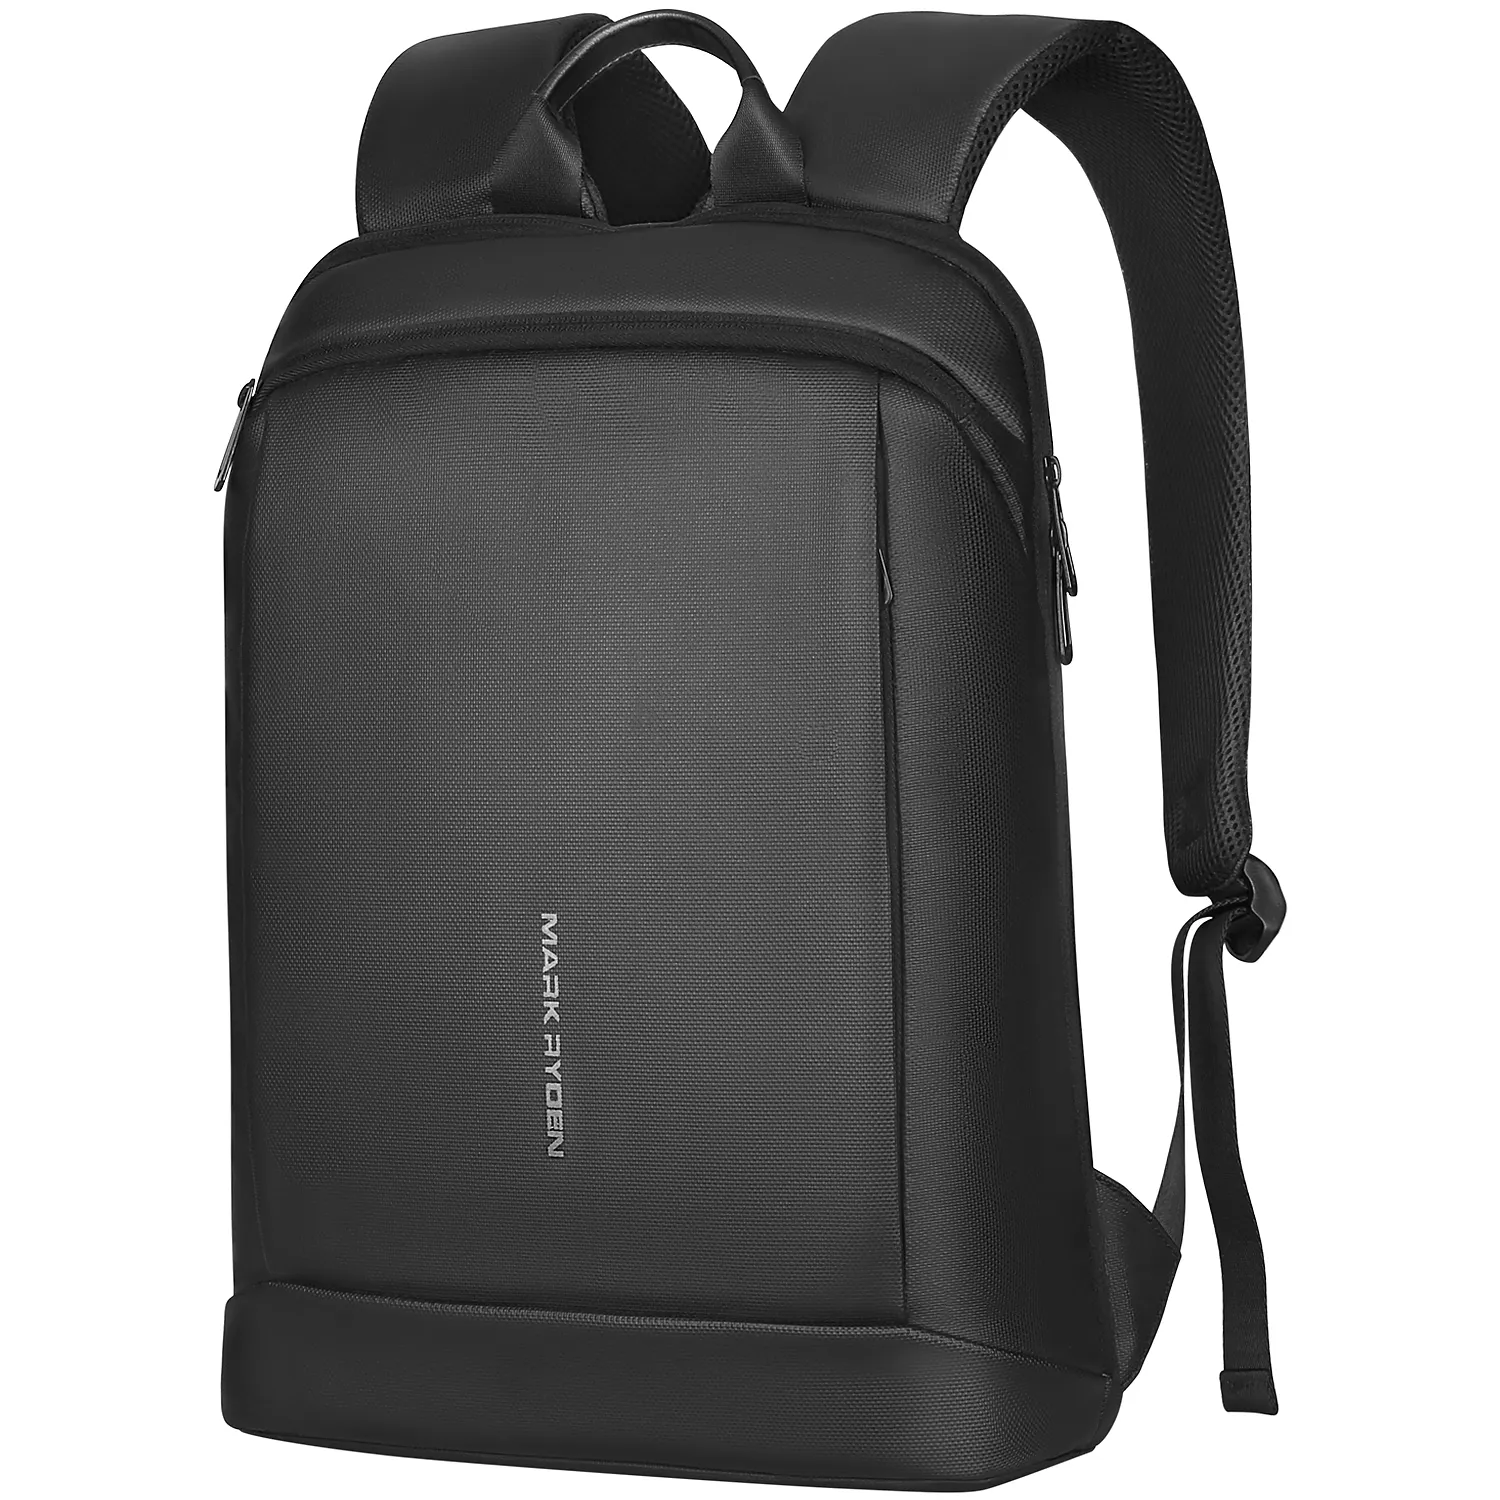 Mark Ryden Laptop backpack waterproof 15.6 inch school bag with antitheft design For Men travel laptop backpack MR9813-B